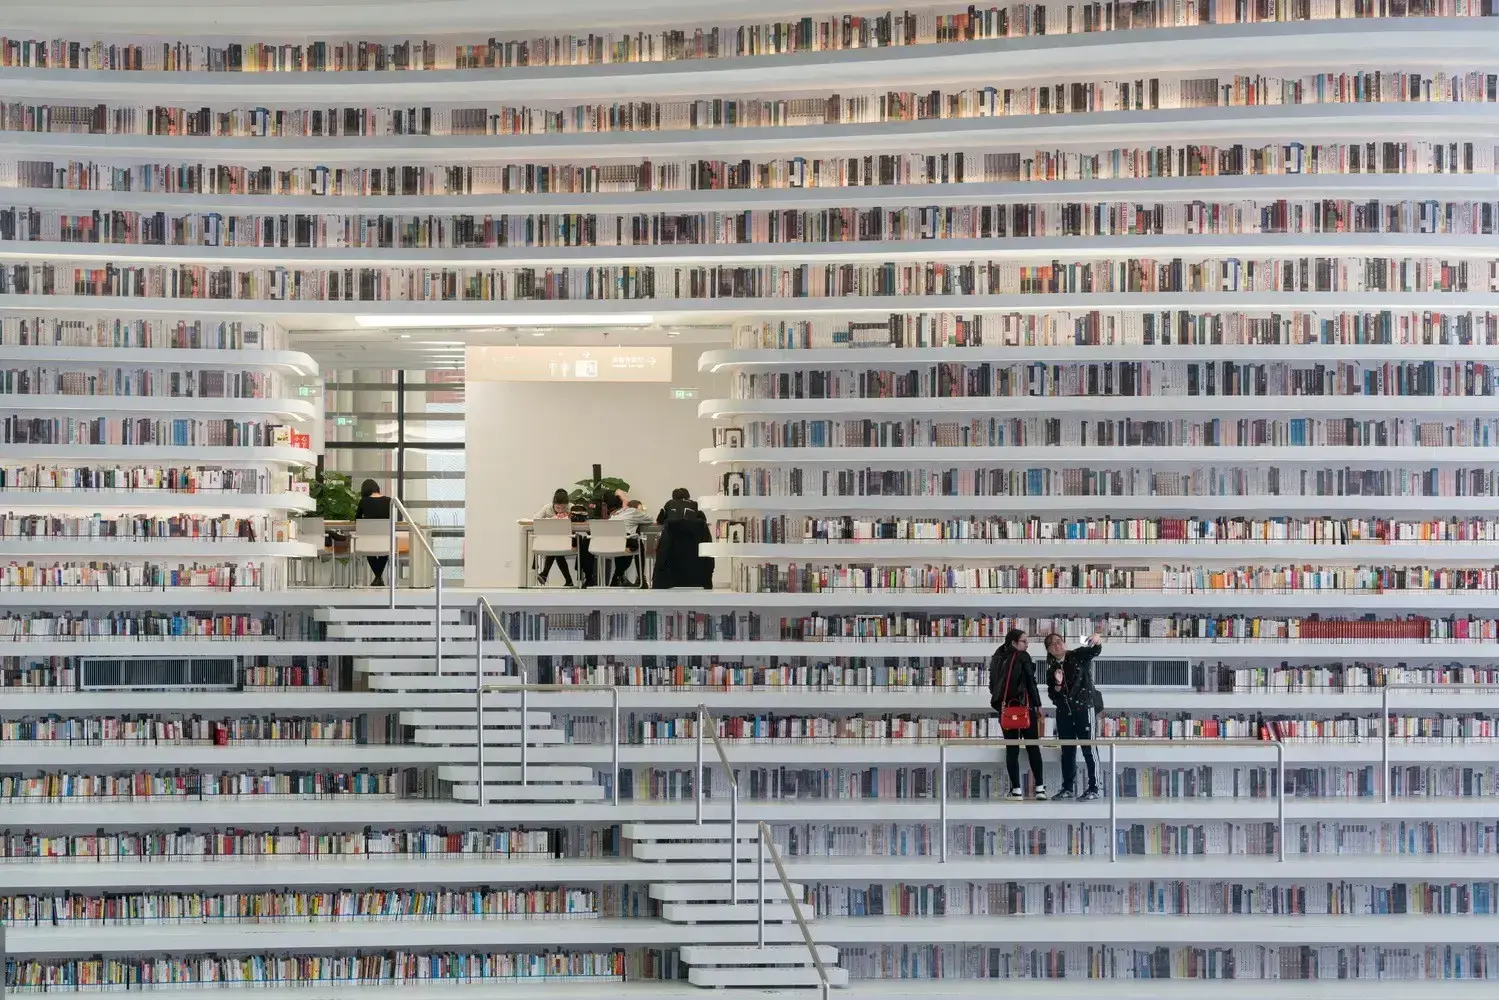 Projeto de biblioteca: biblioteca em Tianjin - China (disposição dos livros)